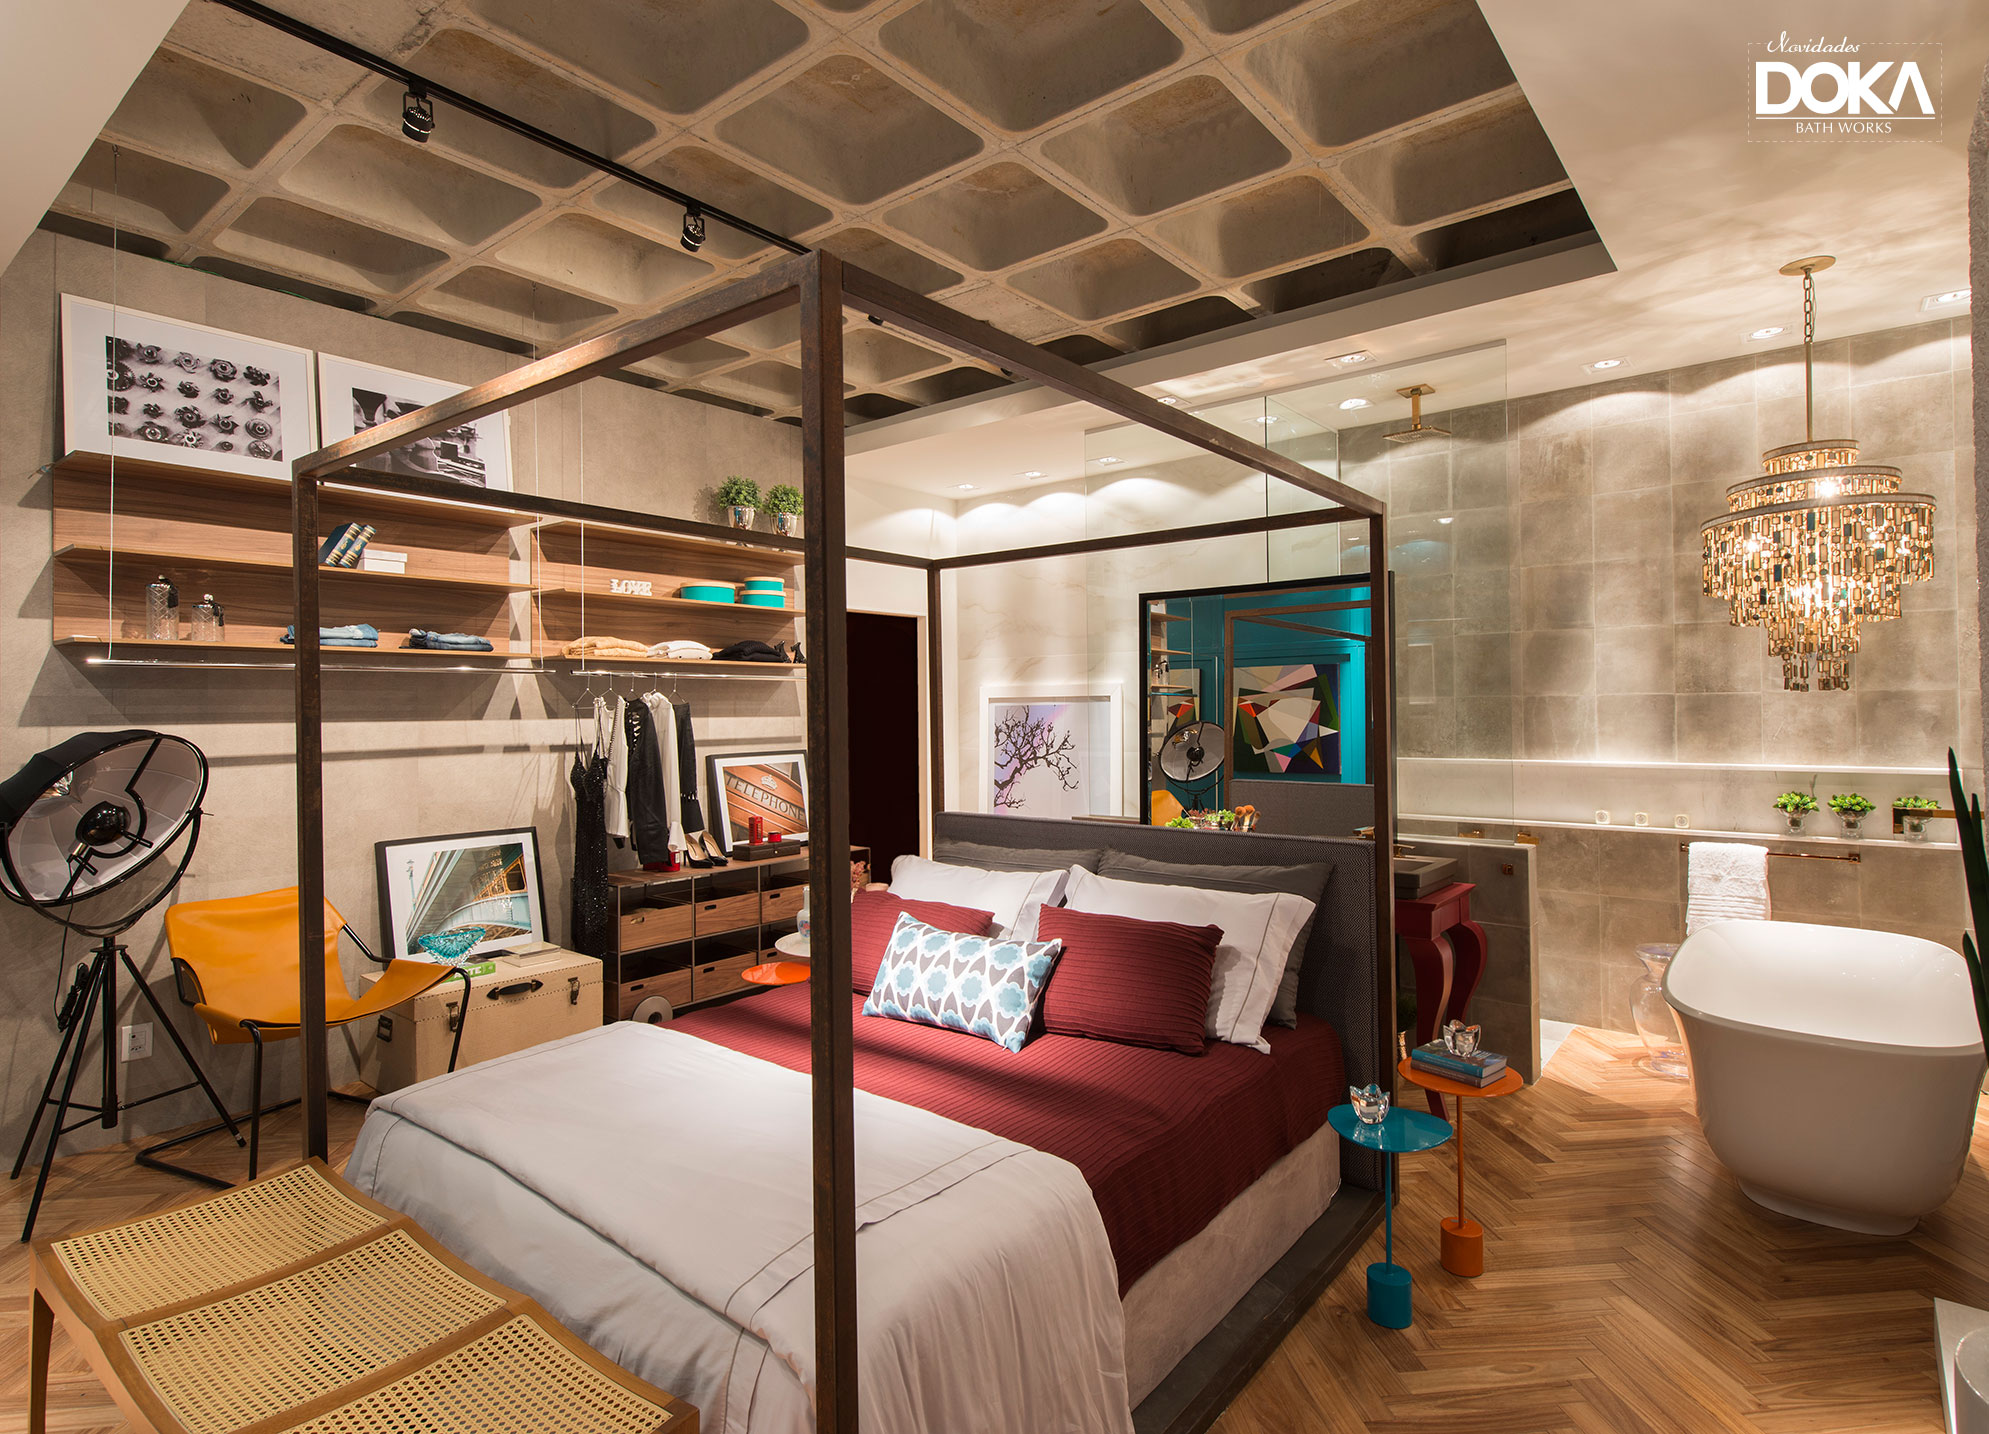 Projeto Casa Cor SC 2015 de Claudia Stach & Daniela Bordignon Arquitetura com espaço de banho integrado ao quarto.